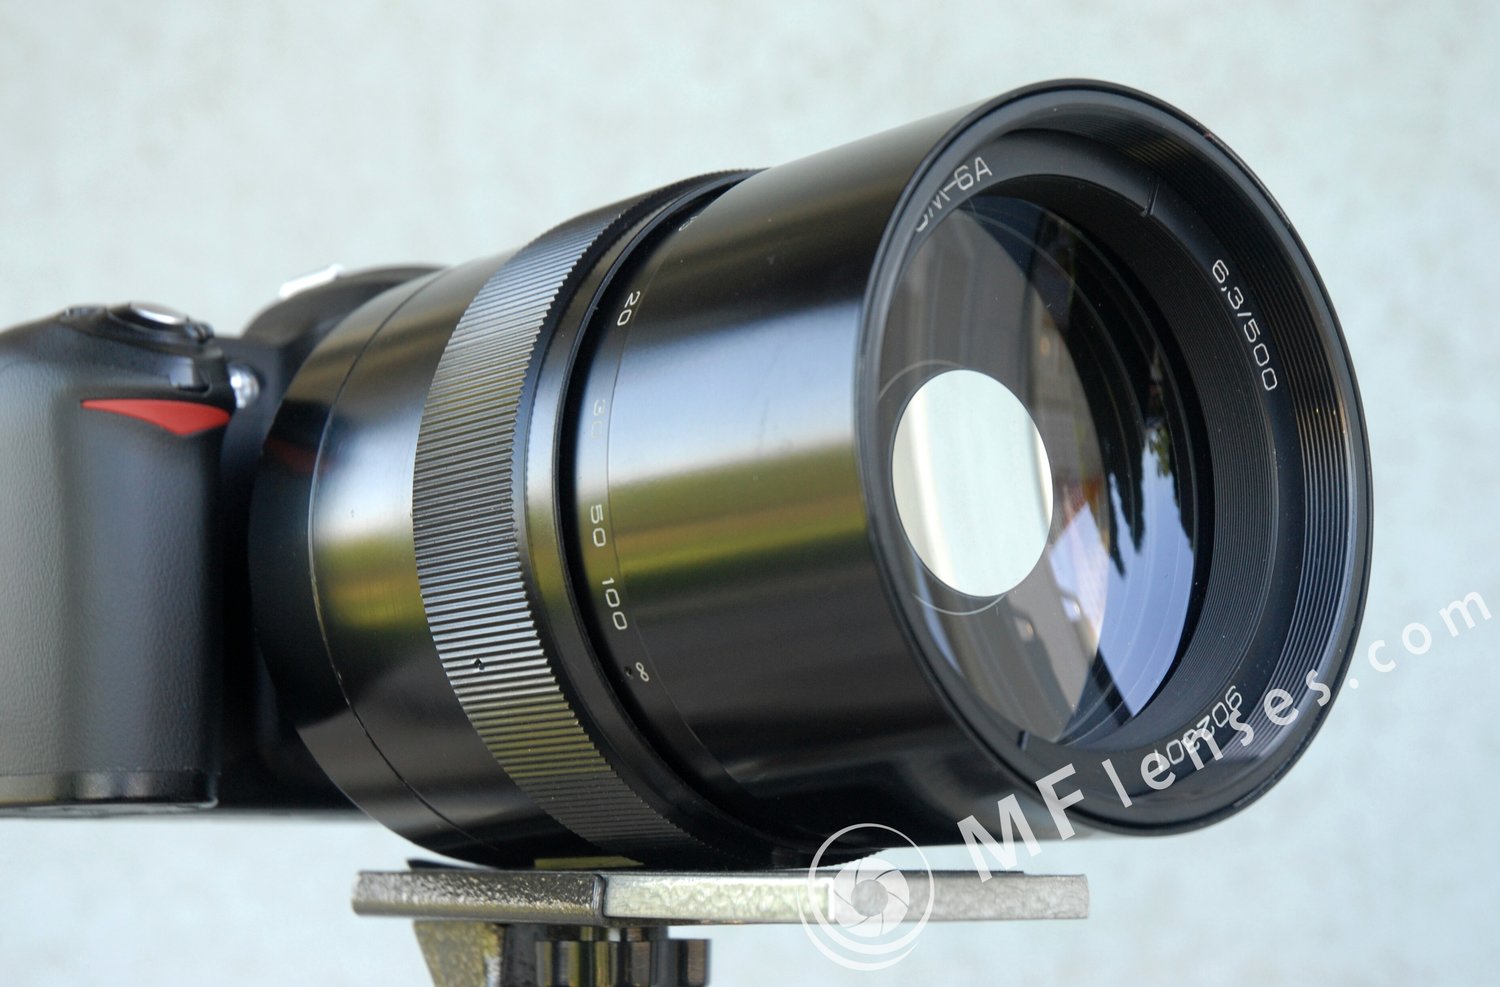 3M-6A 500mm f/6.3 Maksutov mirror lens-2139